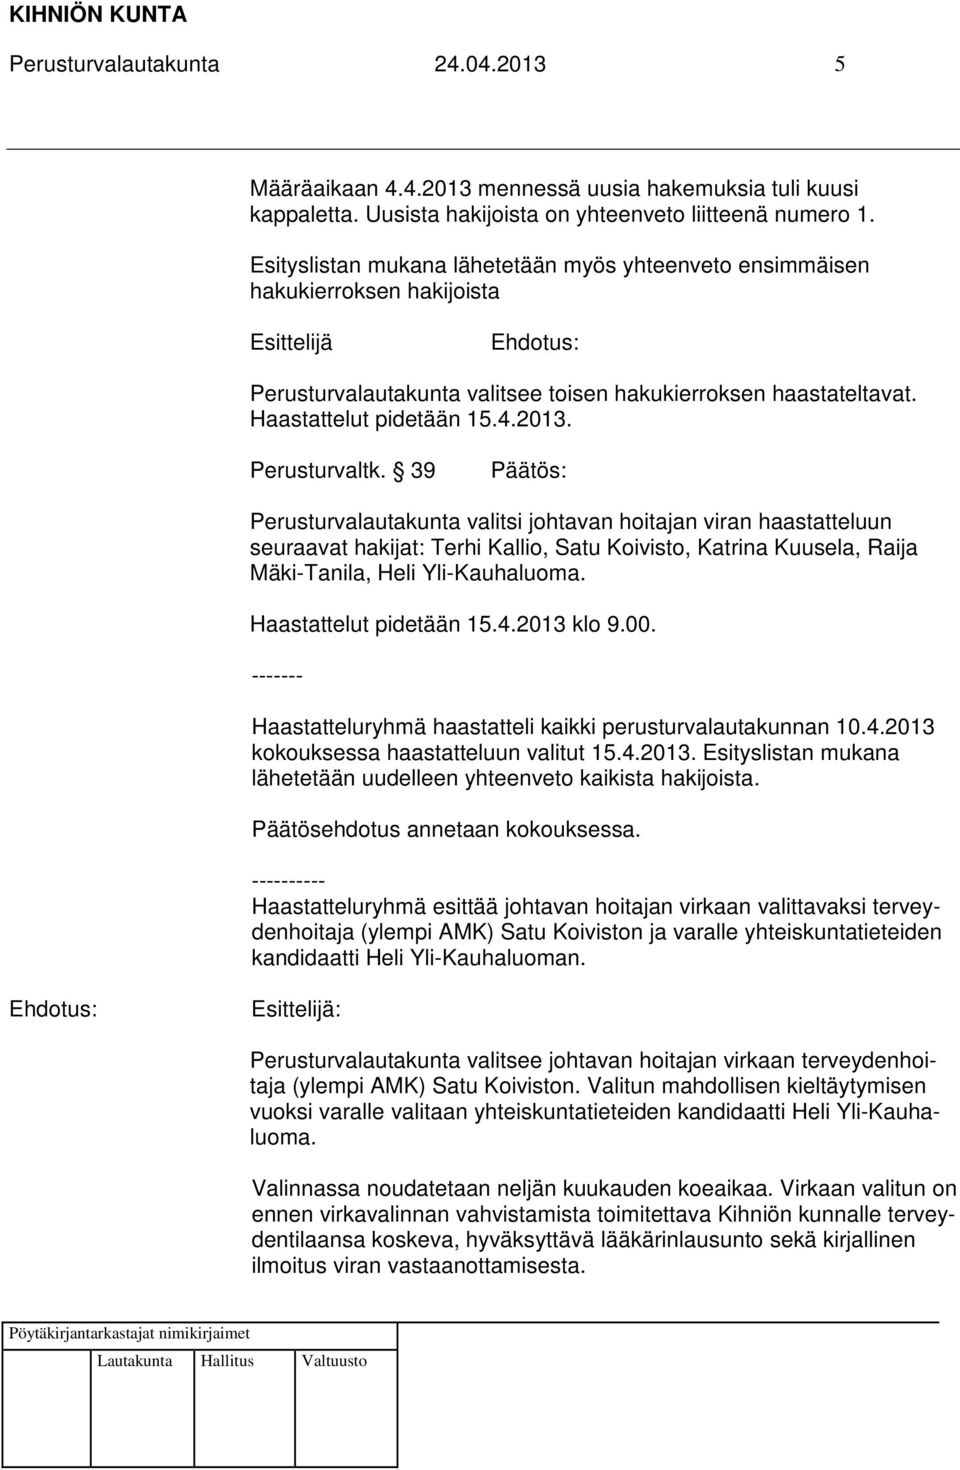 39 Perusturvalautakunta valitsi johtavan hoitajan viran haastatteluun seuraavat hakijat: Terhi Kallio, Satu Koivisto, Katrina Kuusela, Raija Mäki-Tanila, Heli Yli-Kauhaluoma. Haastattelut pidetään 15.